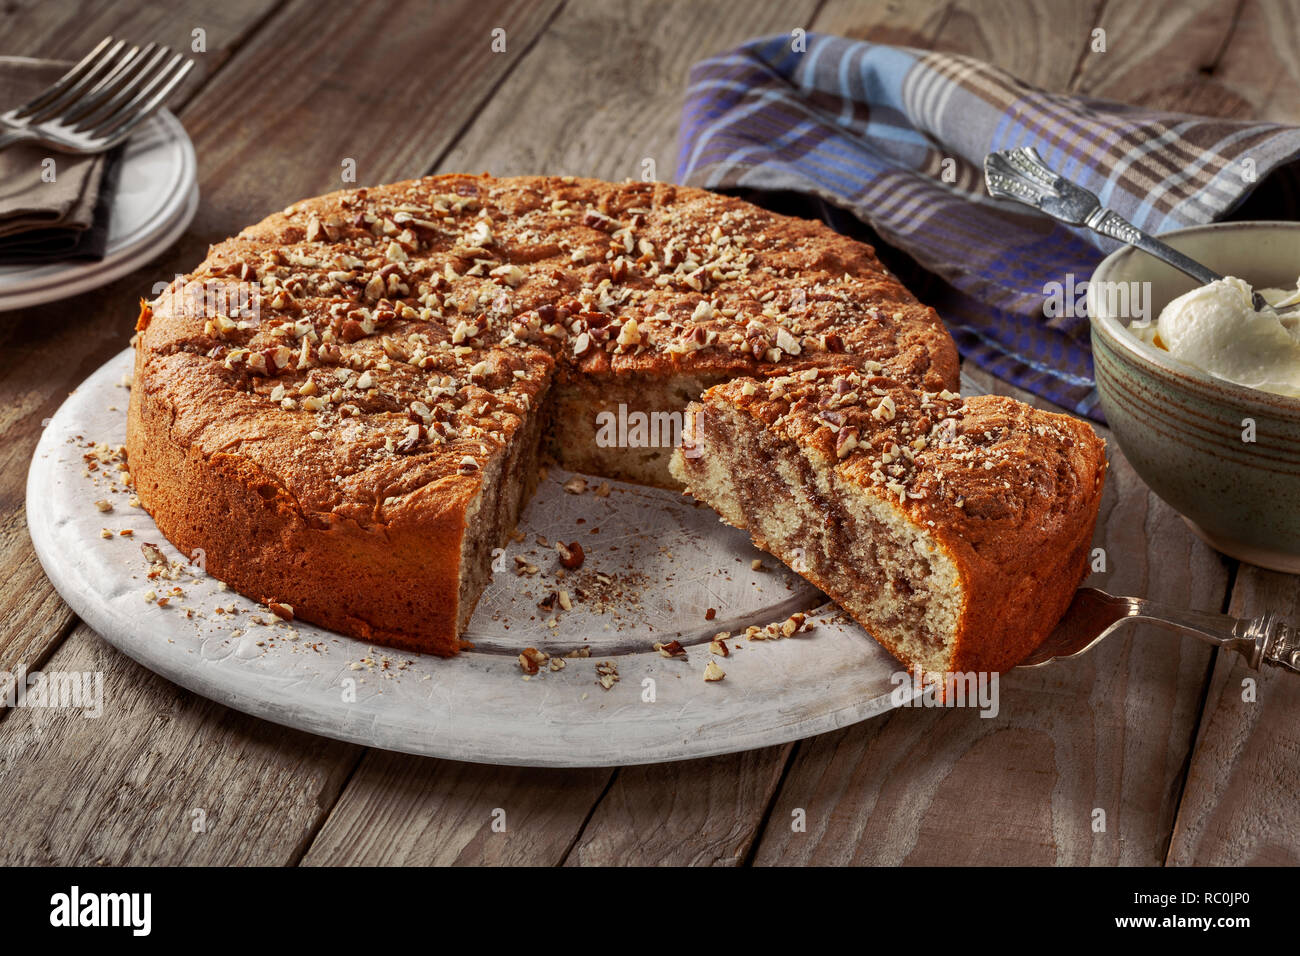 Cinnamon bun cake Stock Photo